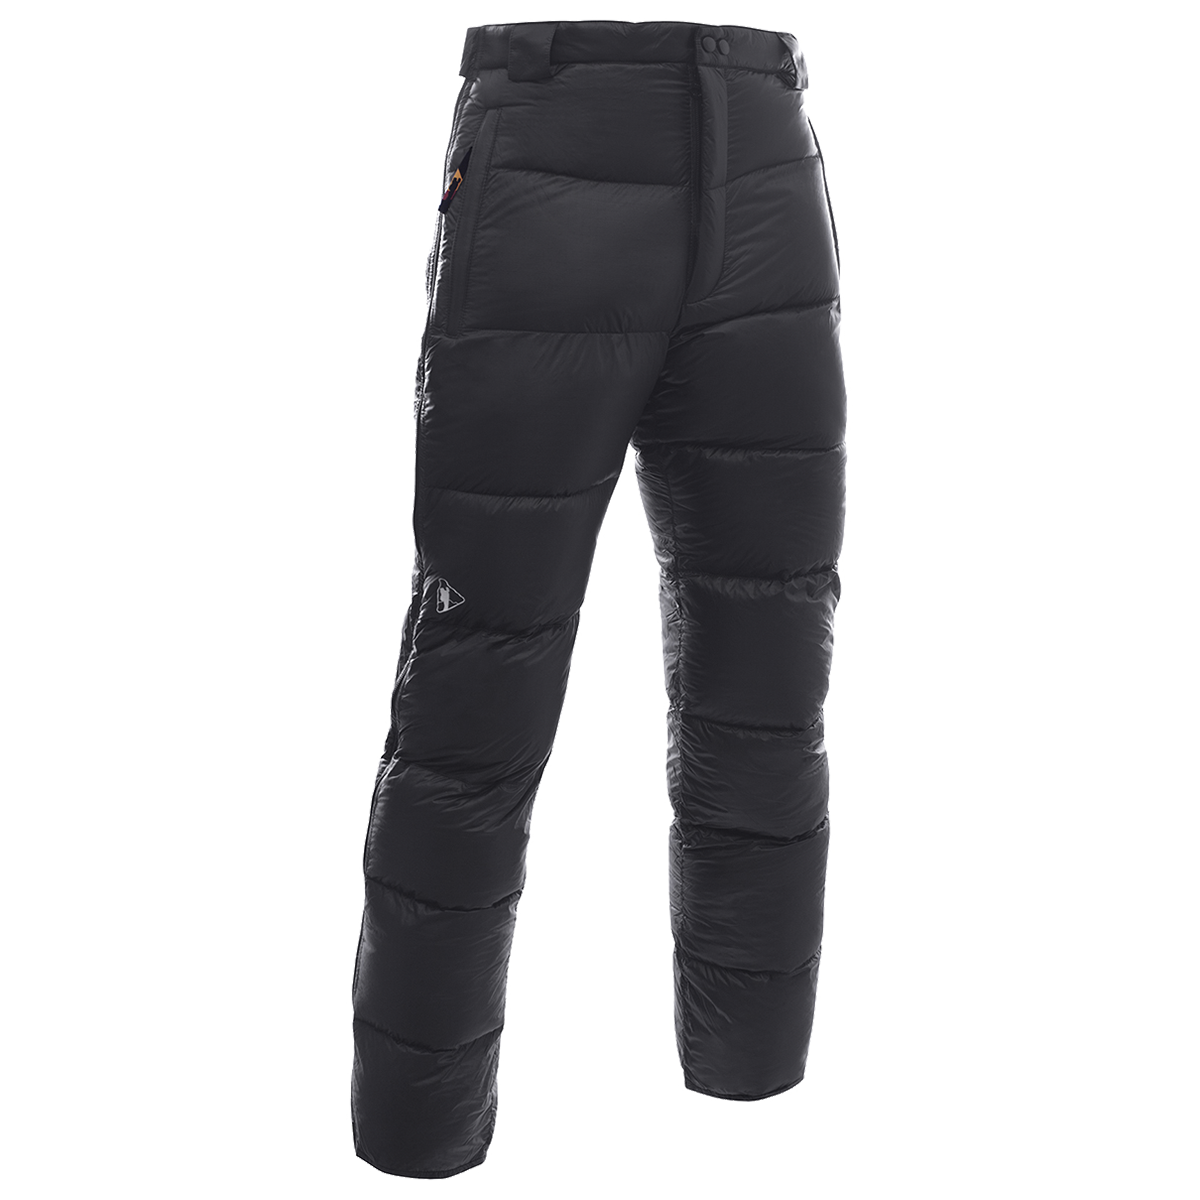 Пуховые брюки BASK, размер 48, цвет черный 3323-9009-048 Meribel v3 - фото 1